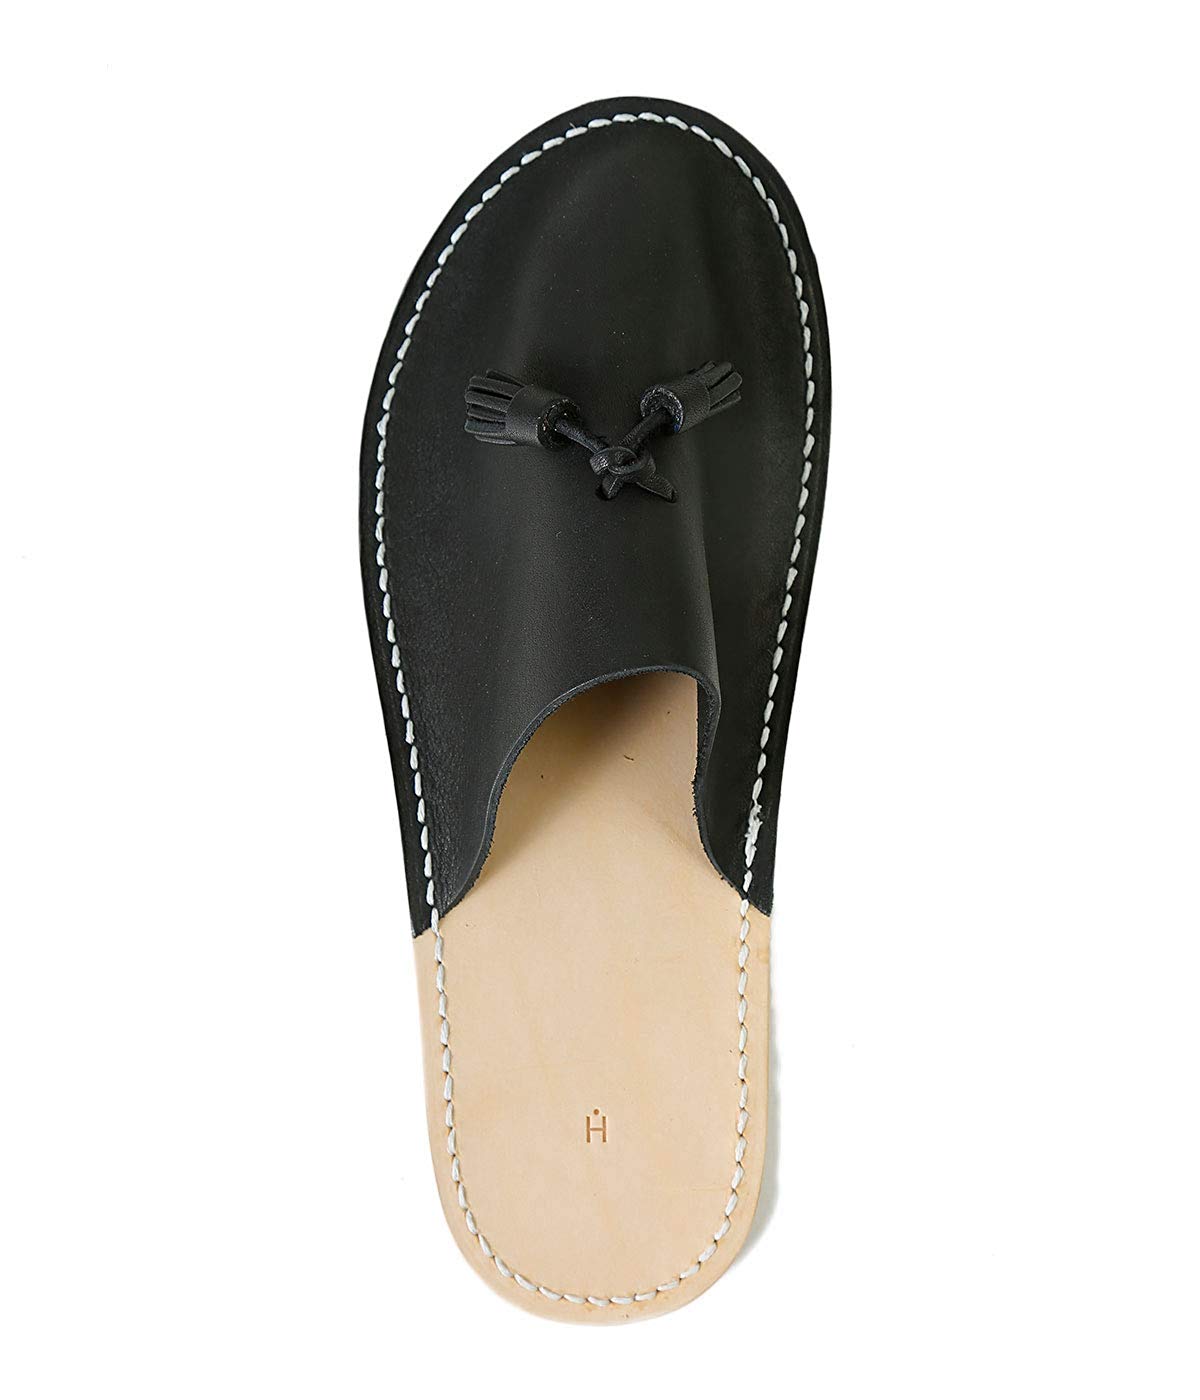 Hender Scheme leather slipper